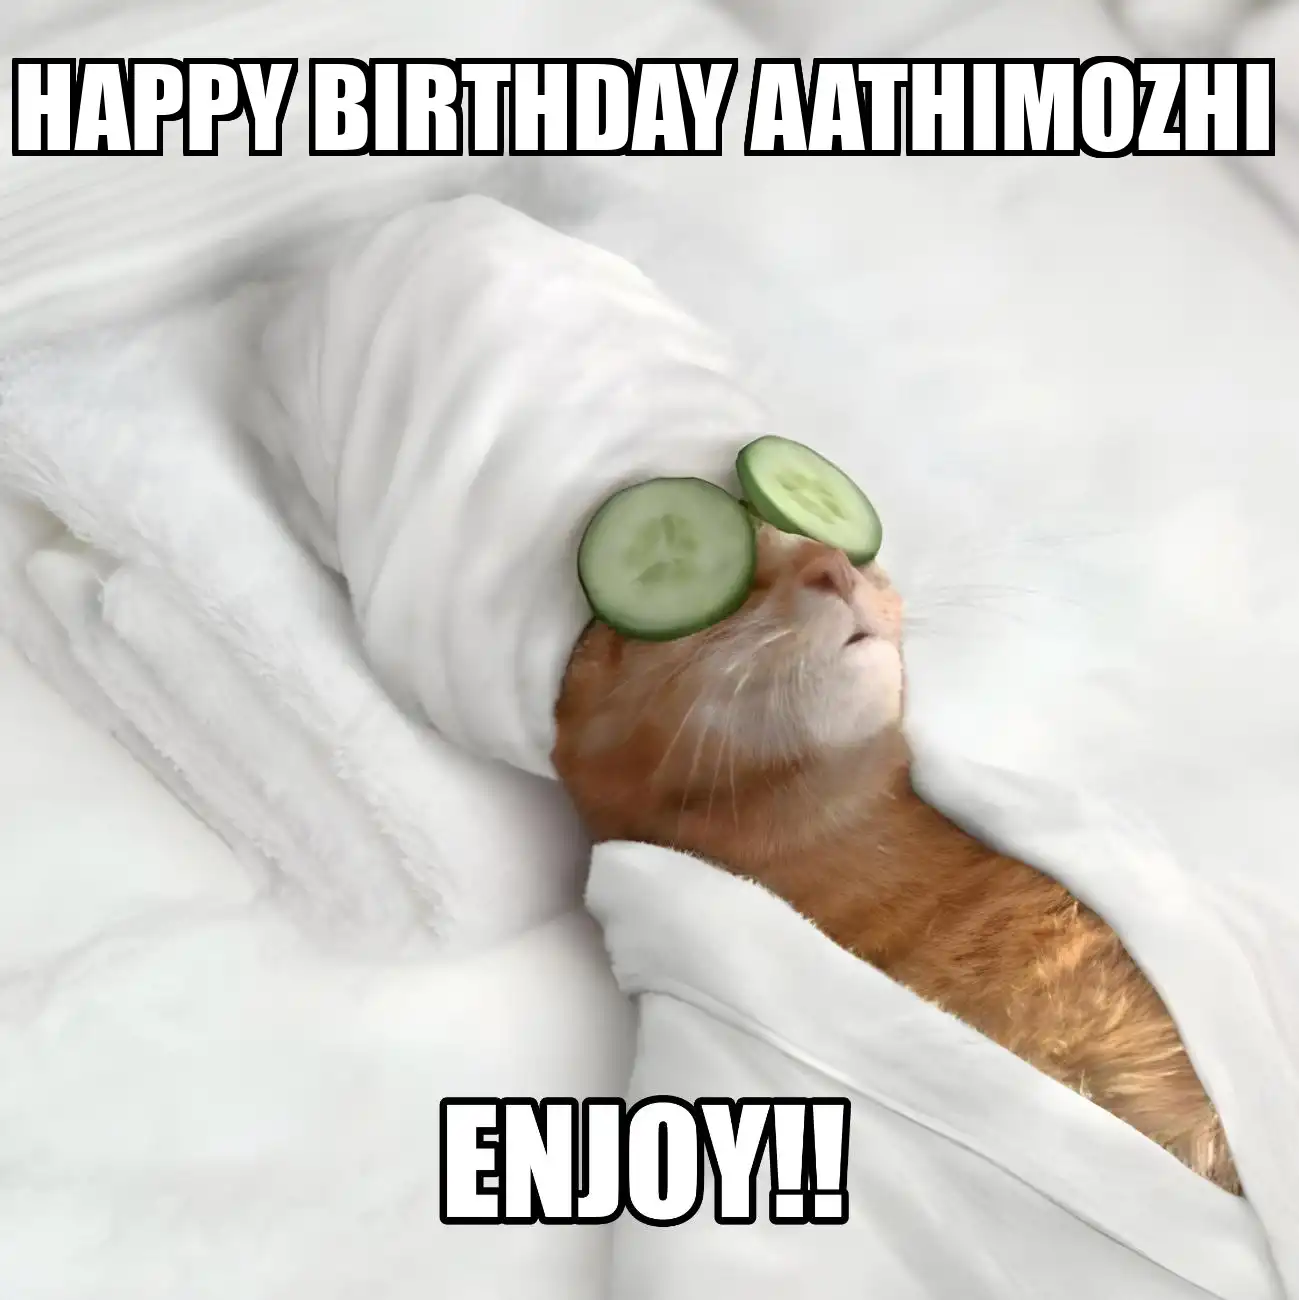 Happy Birthday Aathimozhi Enjoy Cat Meme